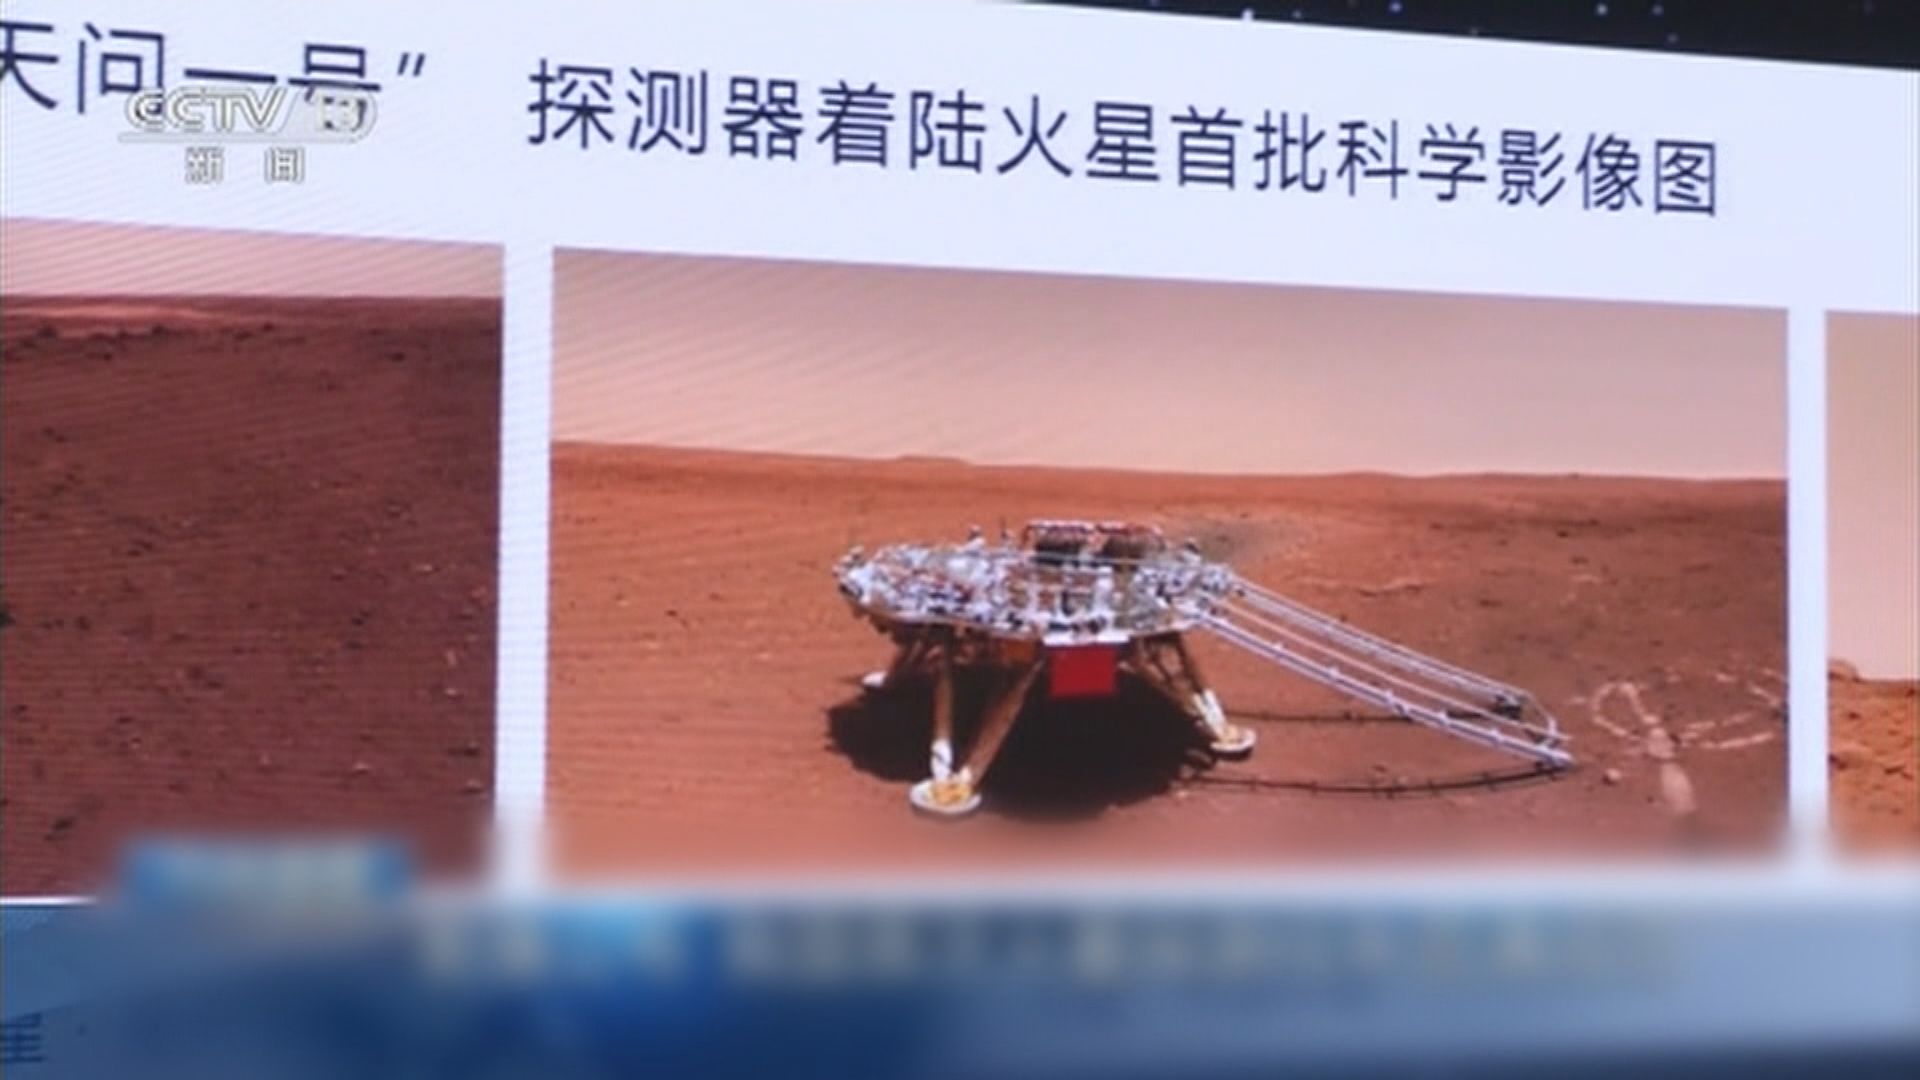 中國祝融號火星車傳回首批科學影像圖